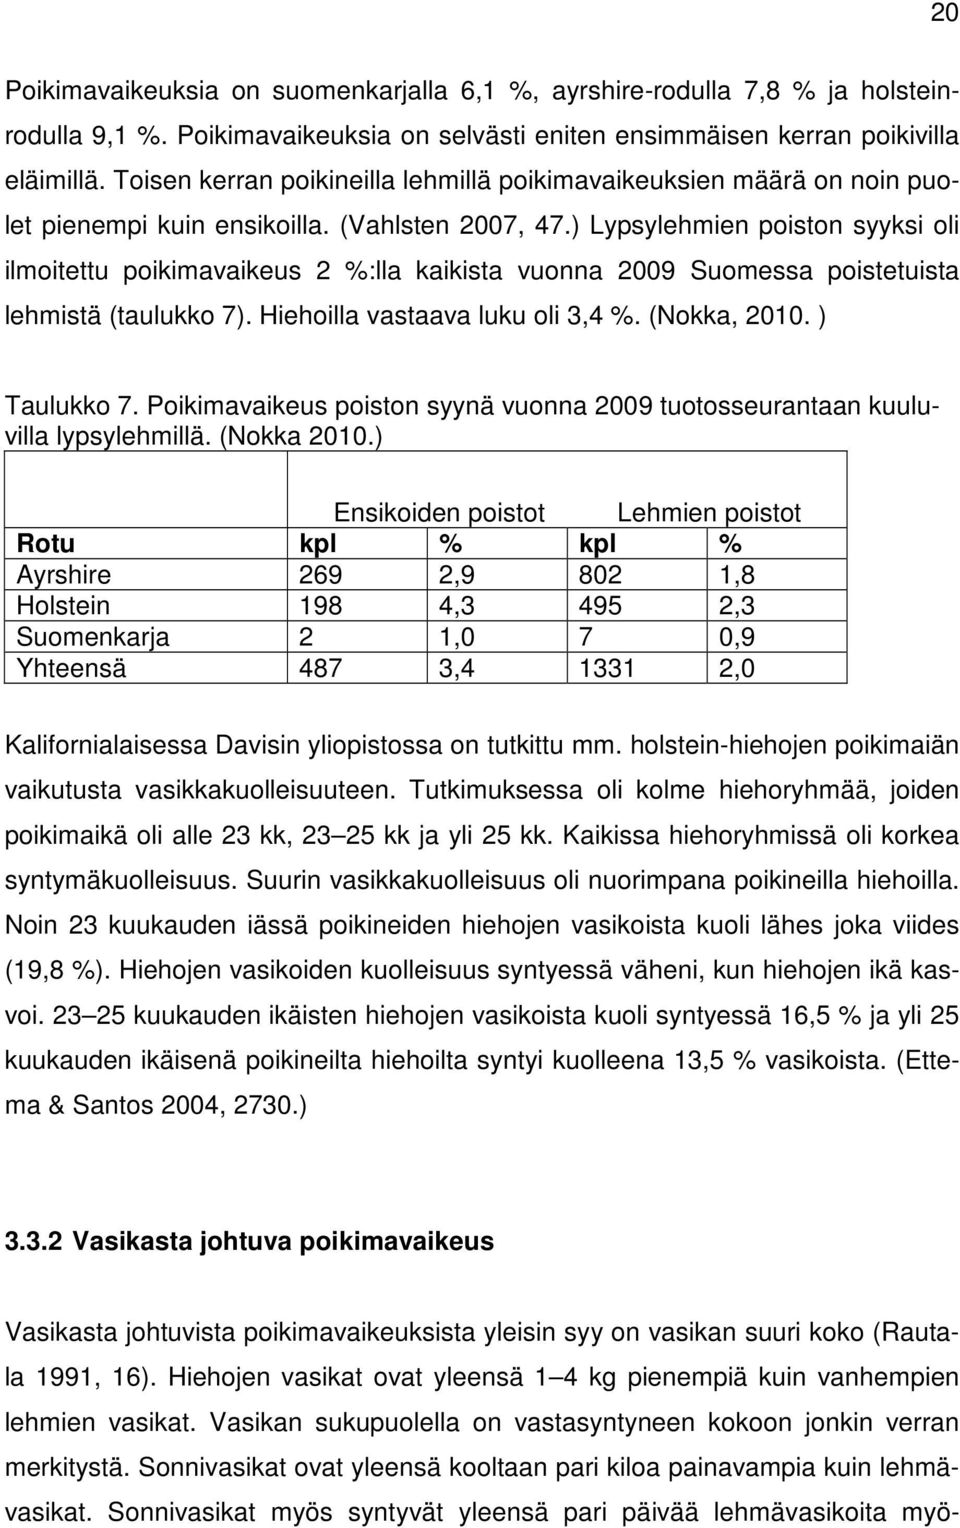 ) Lypsylehmien poiston syyksi oli ilmoitettu poikimavaikeus 2 %:lla kaikista vuonna 2009 Suomessa poistetuista lehmistä (taulukko 7). Hiehoilla vastaava luku oli 3,4 %. (Nokka, 2010. ) Taulukko 7.